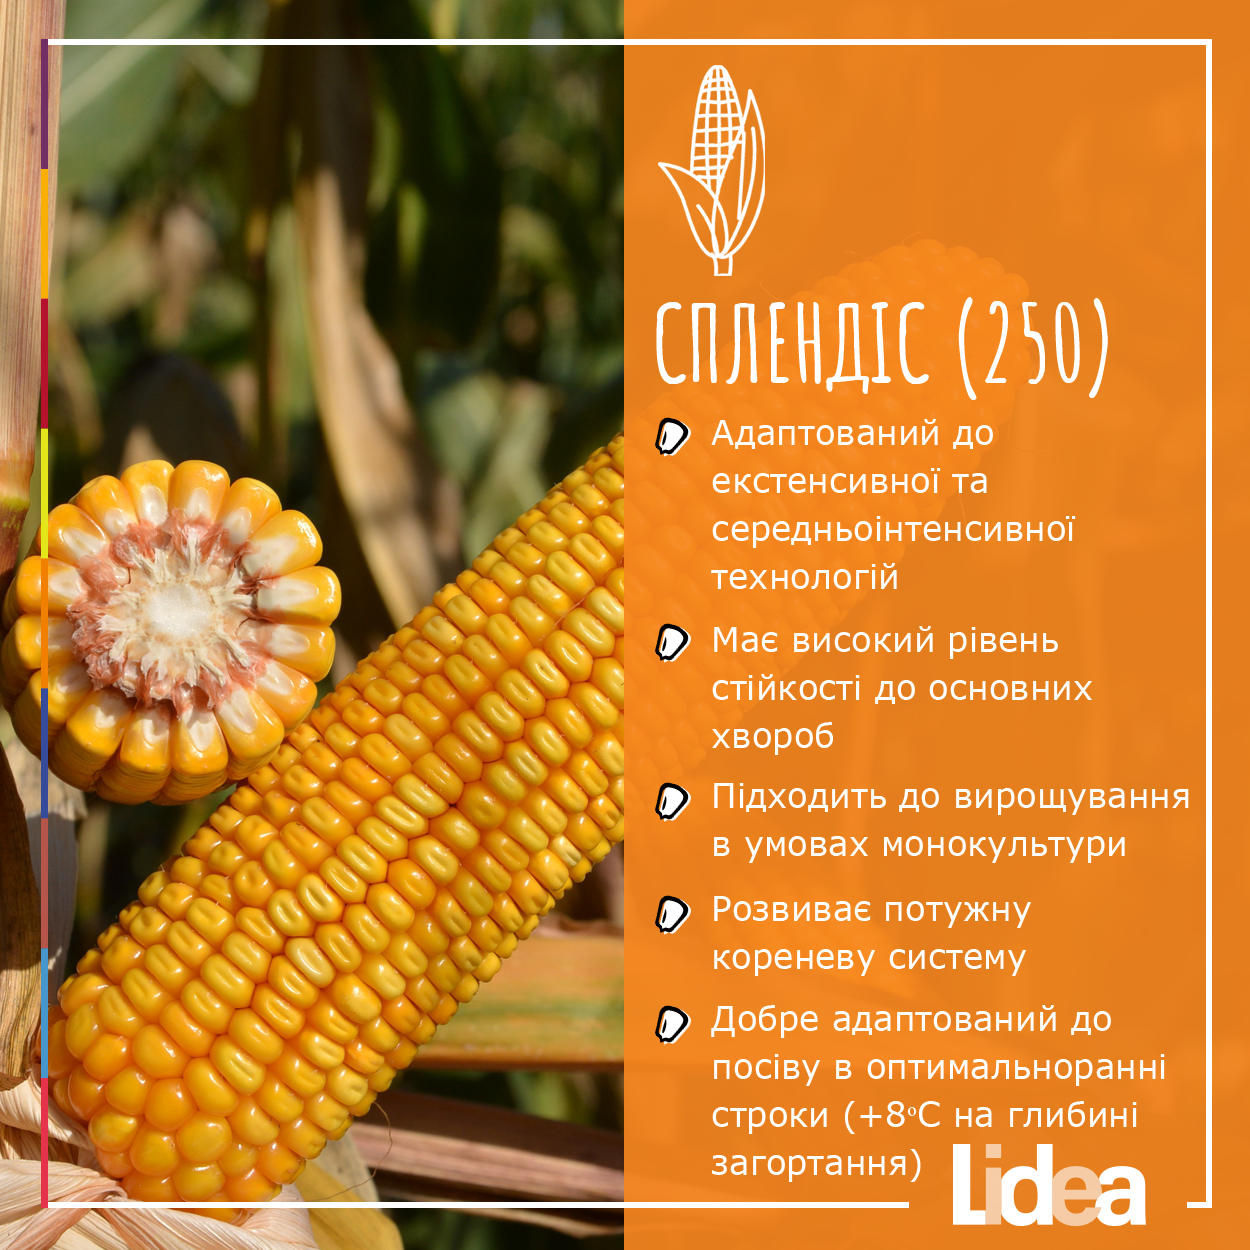 Продуктивний за екстенсивної та середньоінтенсивної технологій, гібрид кукурудзи на зерно.  Розвиває потужну кореневу систему  Має високий рівень стійкості до основних хвороб  Підходить до вирощування в умовах монокультури